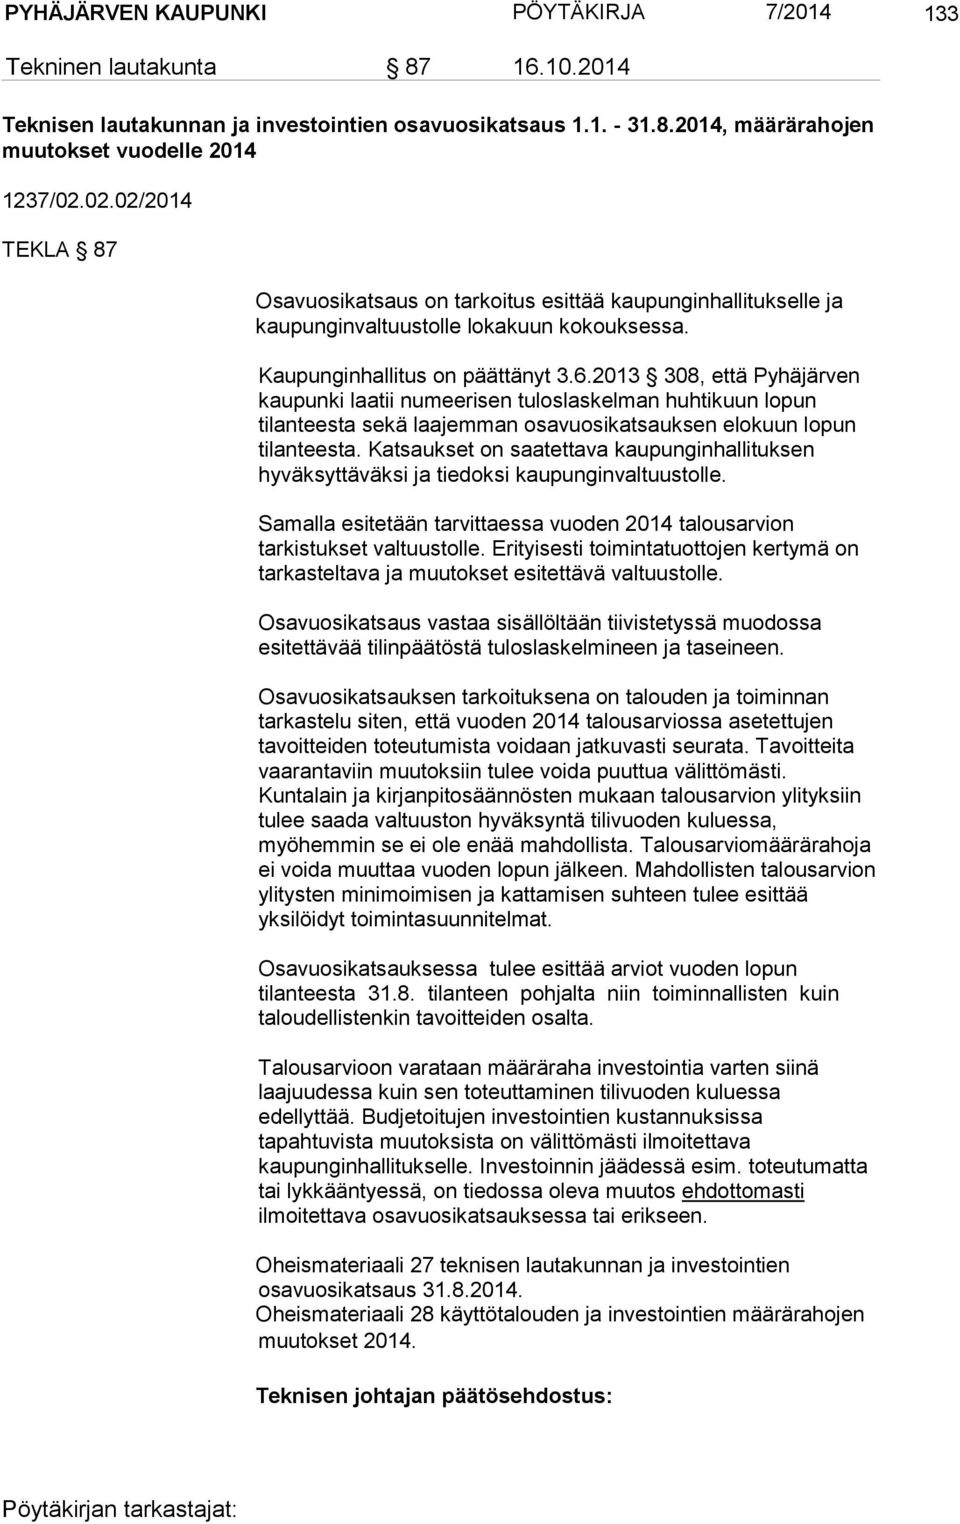 2013 308, että Pyhäjärven kaupunki laatii numeerisen tuloslaskelman huhtikuun lopun tilanteesta sekä laajemman osavuosikatsauksen elokuun lopun tilanteesta.